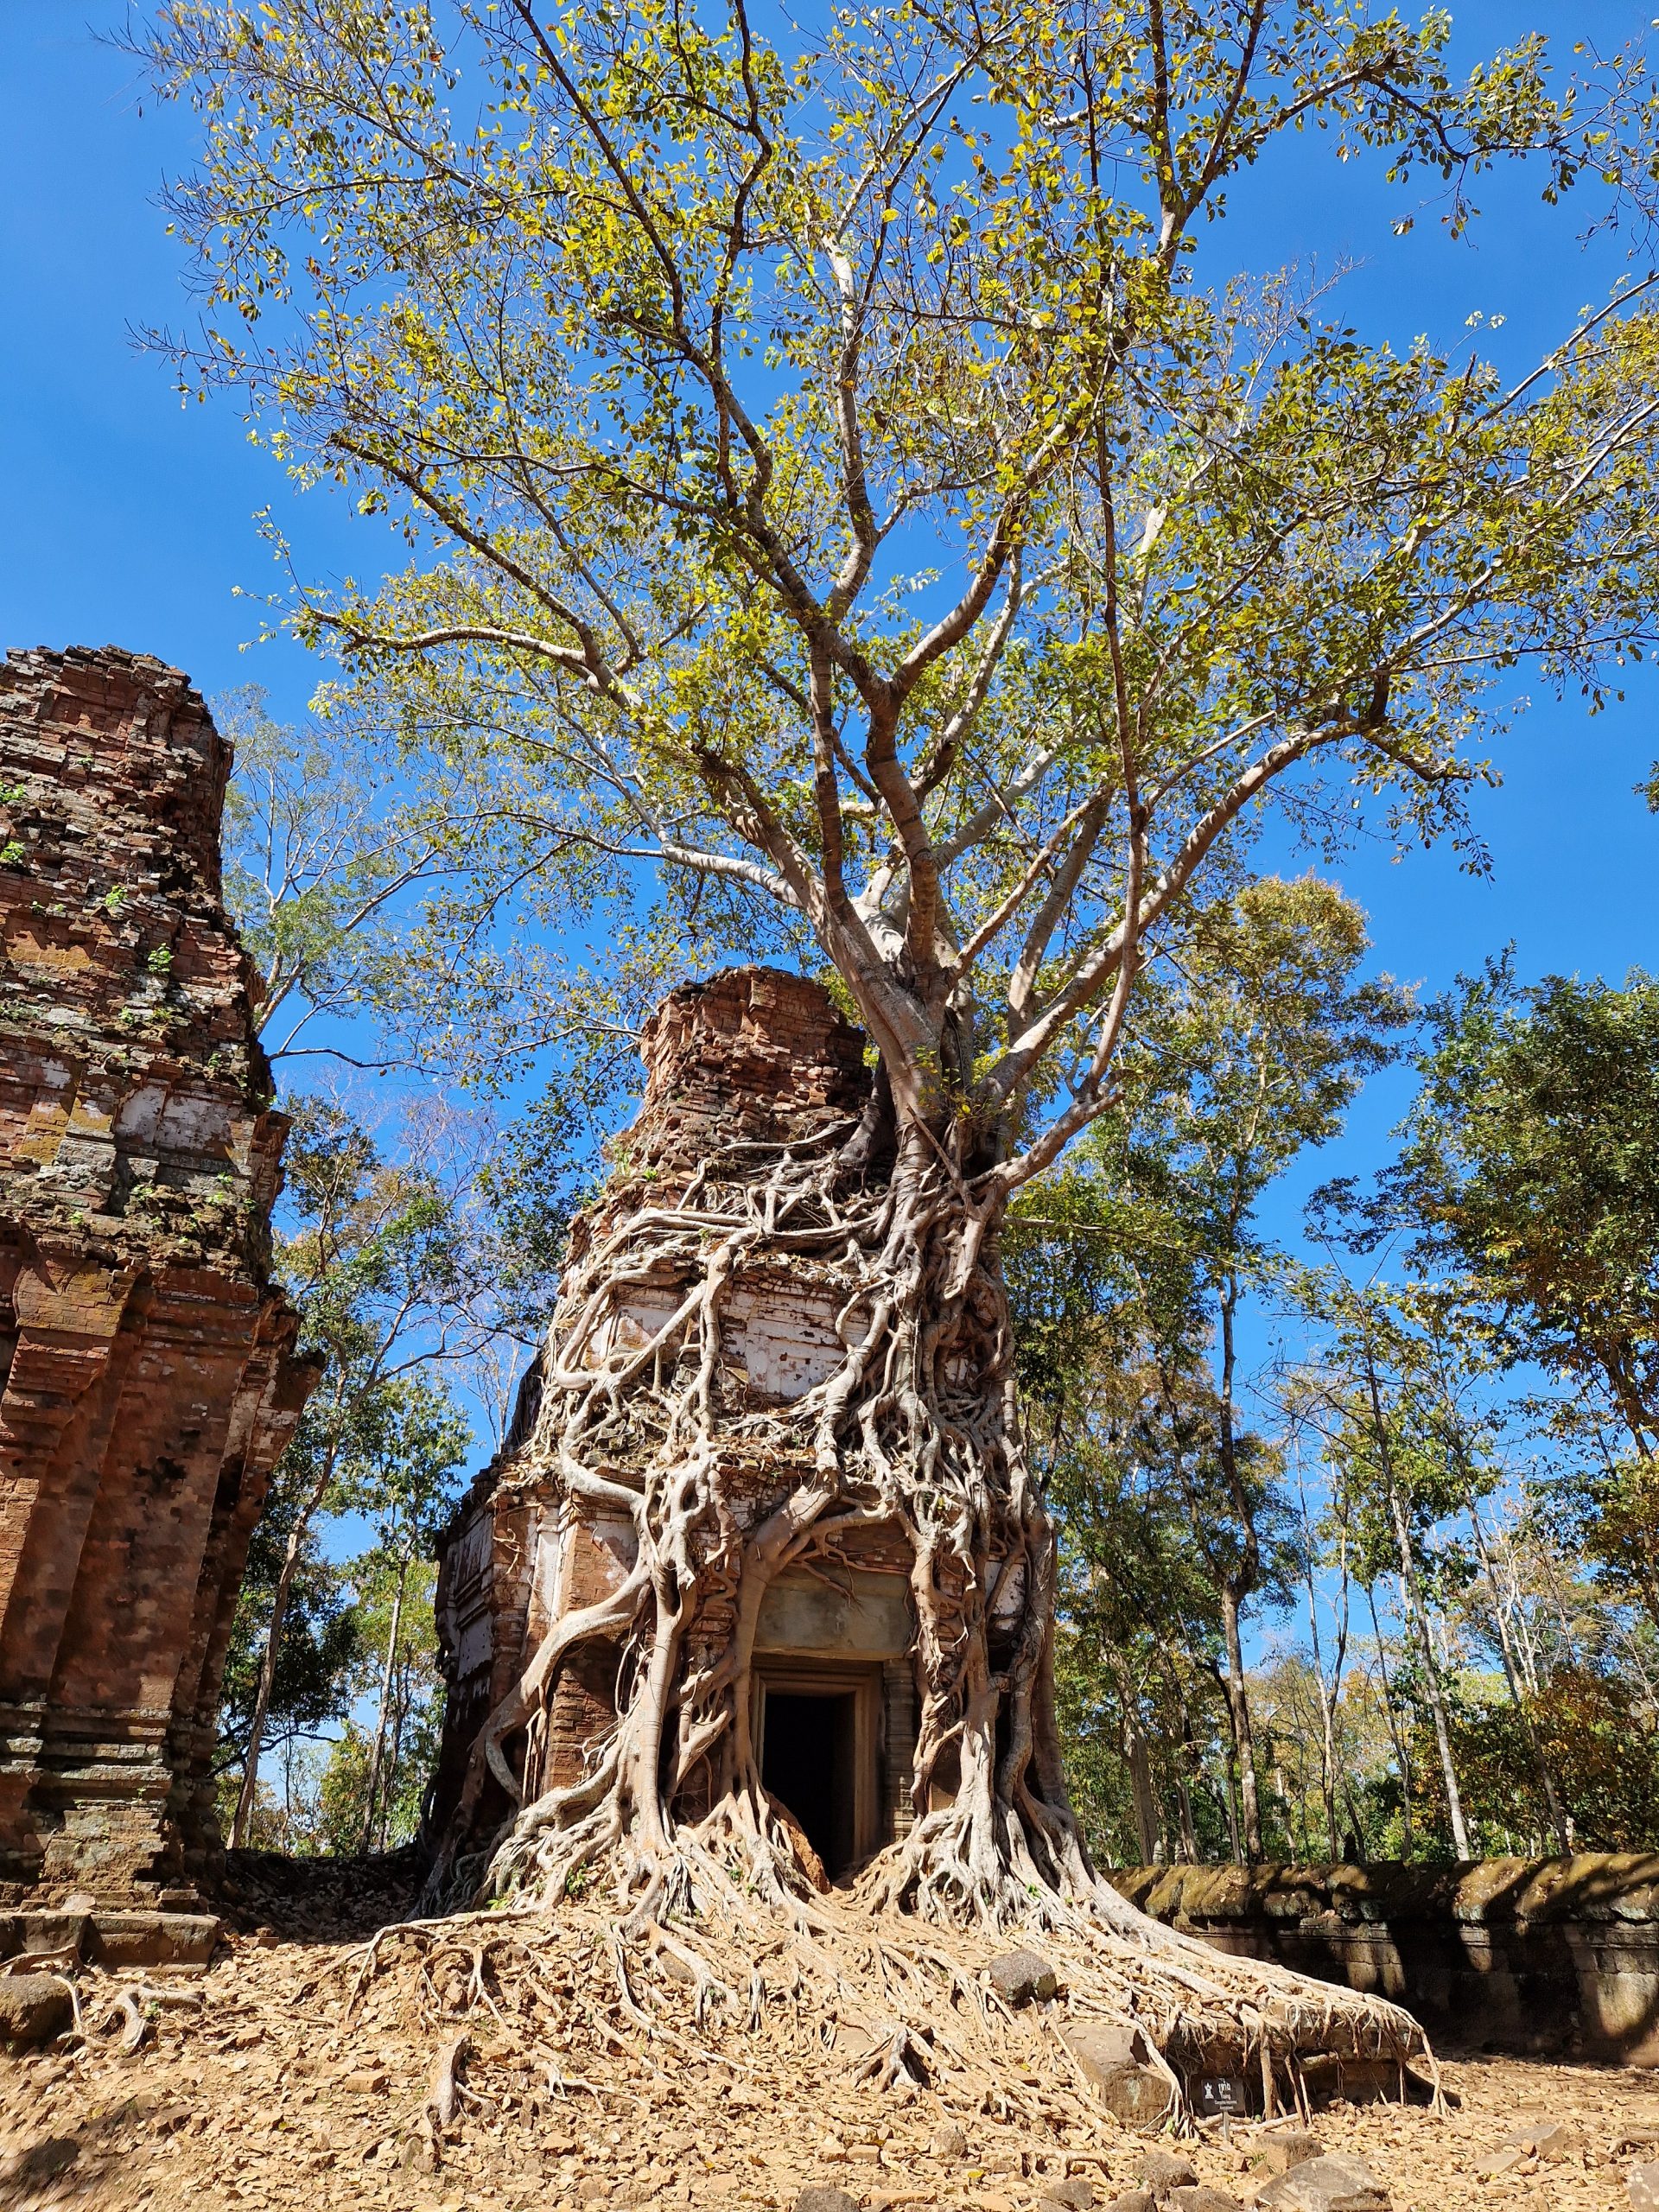 Kambodża: co robić w Siem Reap? Angkor Wat i co dalej?